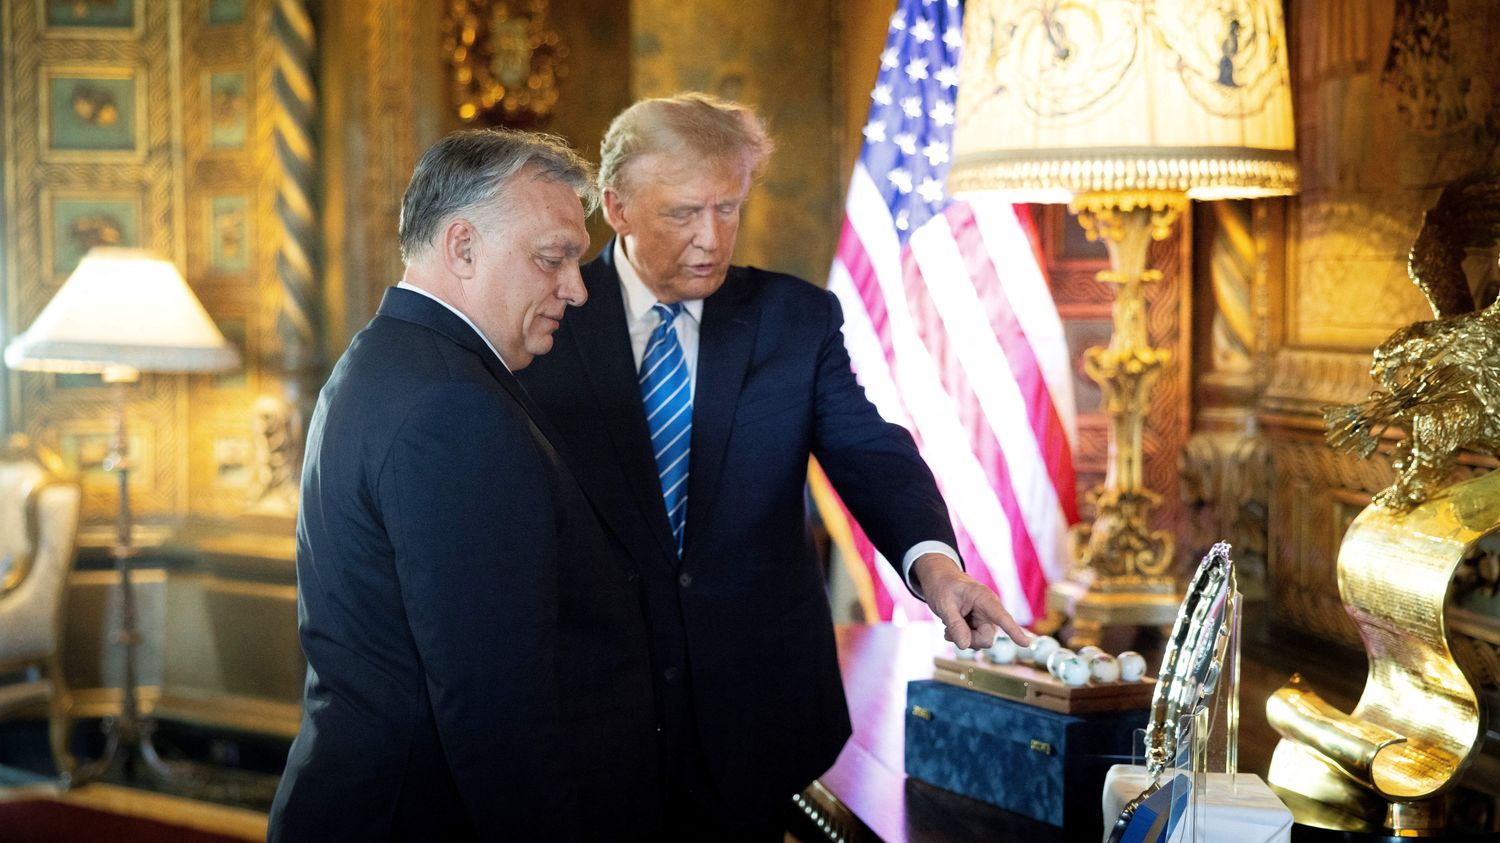 Jeśli zostanie wybrany, Donald Trump „nie da ani grosza” konfliktowi, mówi Viktor Orbán